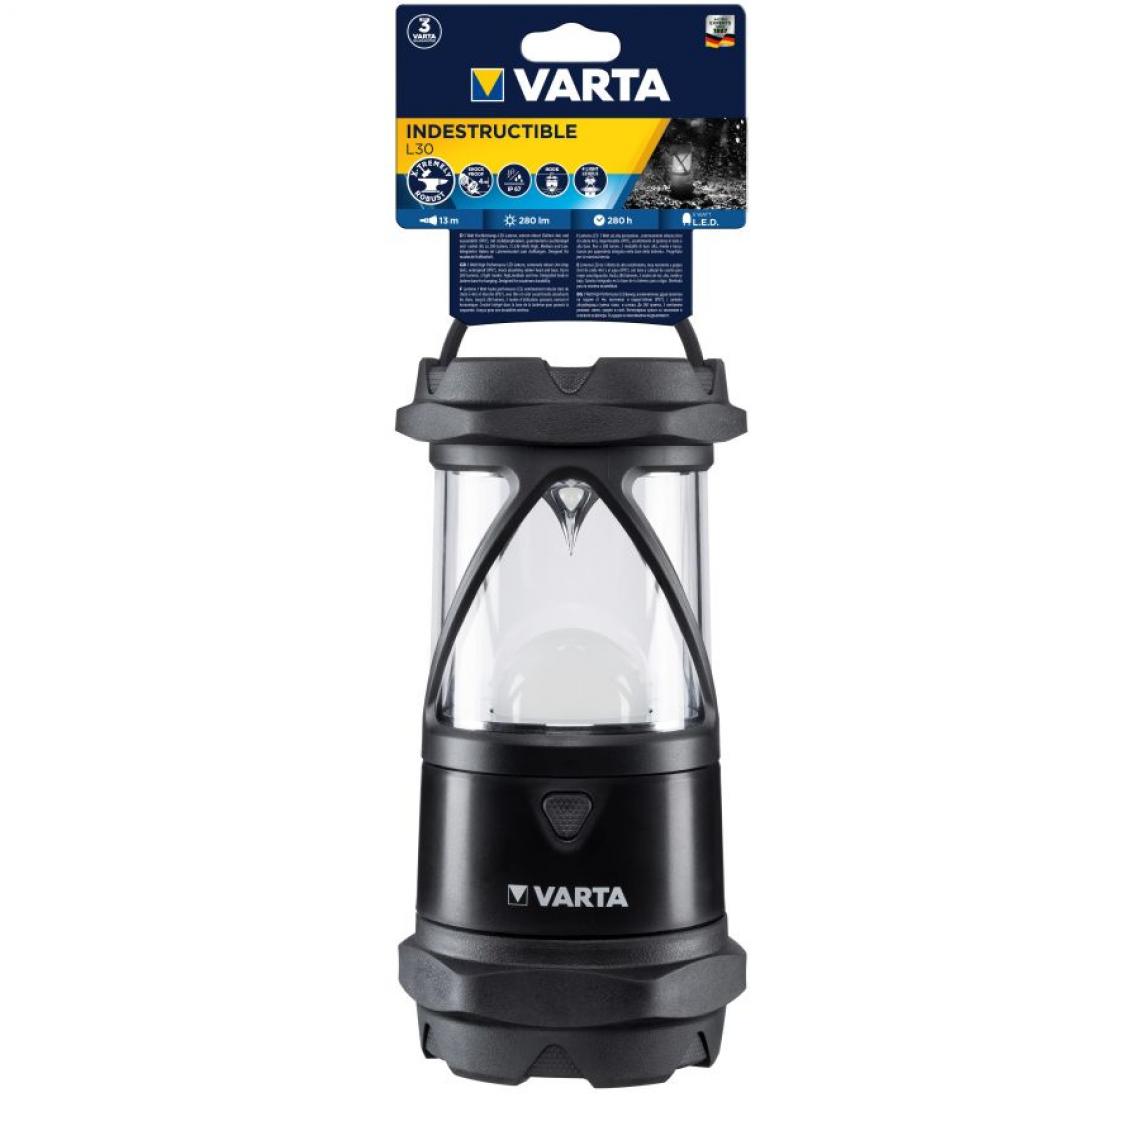 Varta - Torche Indestructible VARTA PRO L30 - 6 AA (non incluses) - 18761101111 - Lampes portatives sans fil